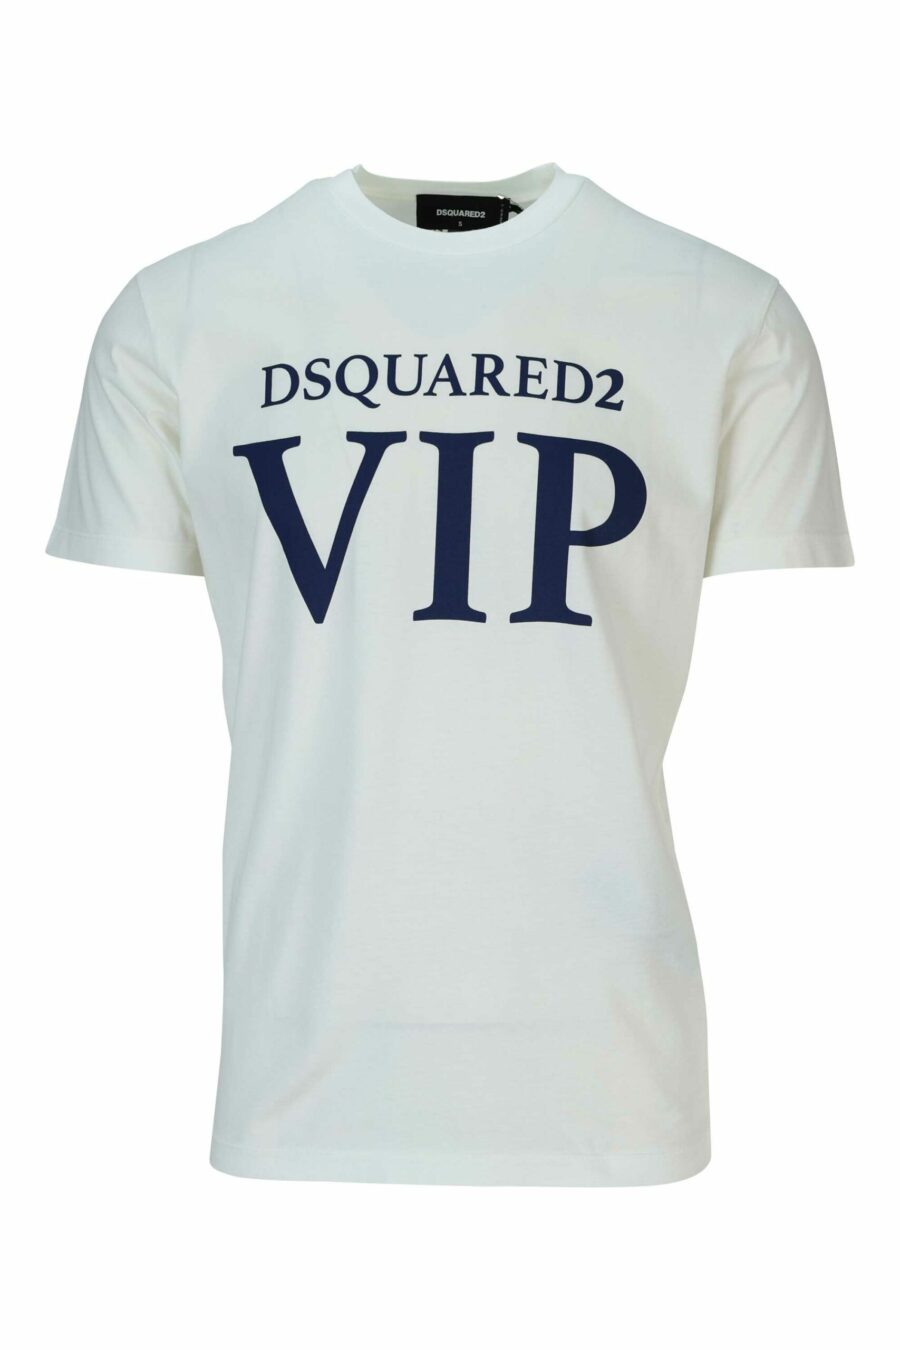 Weißes T-Shirt mit "vip" Maxilogo - 8054148578855 skaliert